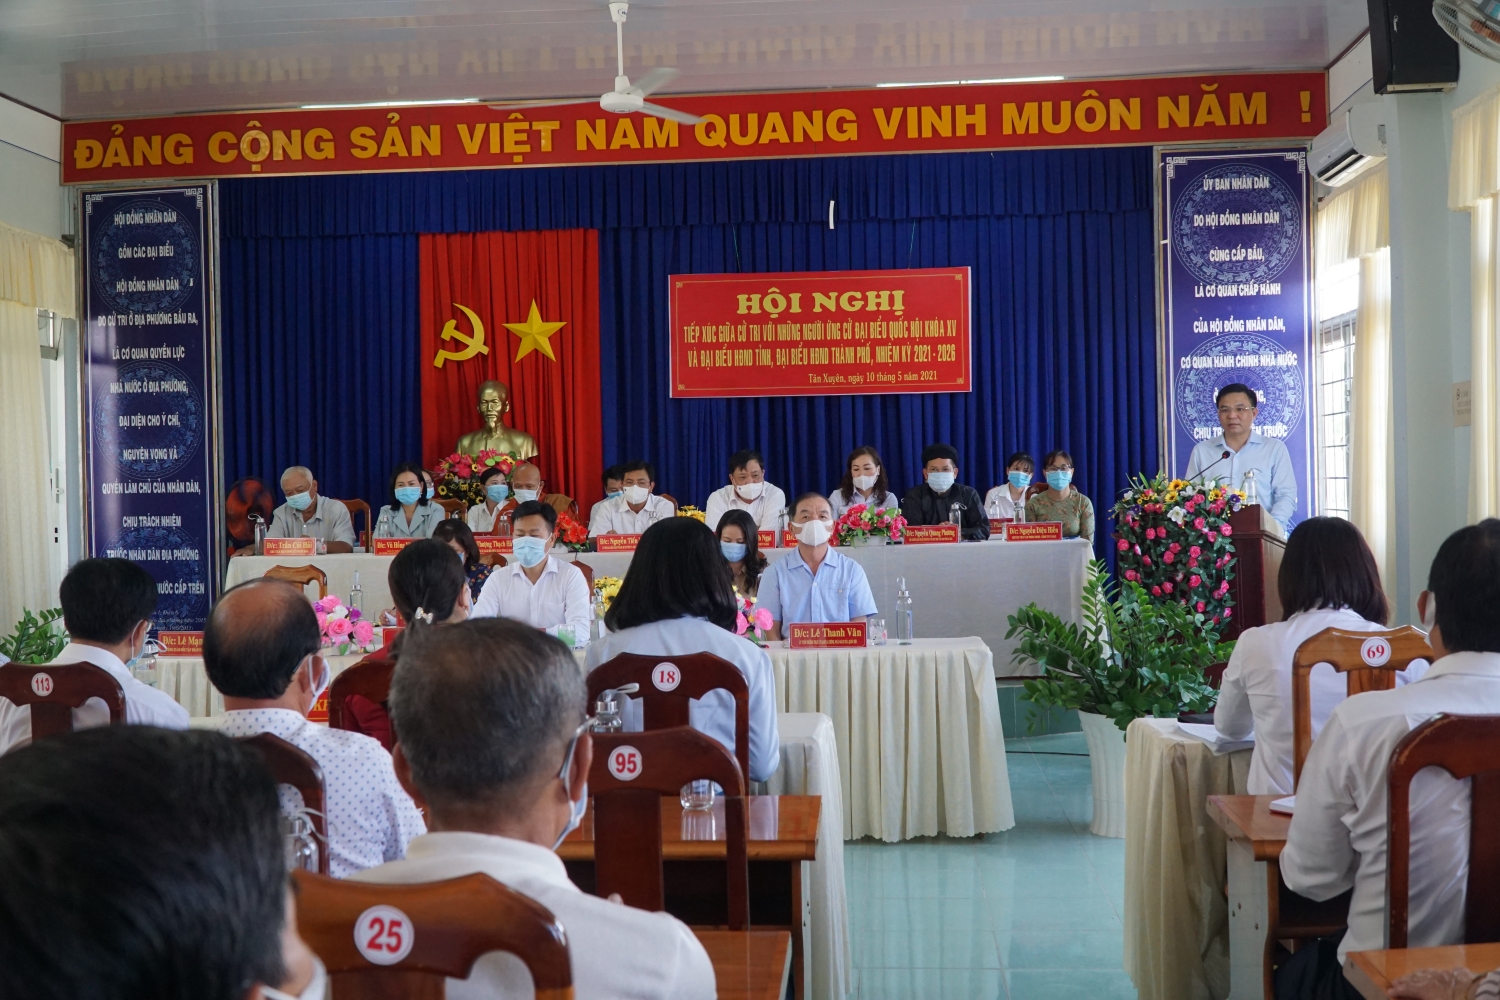 Đồng chí Lê Mạnh Hùng trình bày chương trình hành động tại Hội nghị Tiếp xúc cử tri phường Tân Xuyên và xã Tân Xuyên